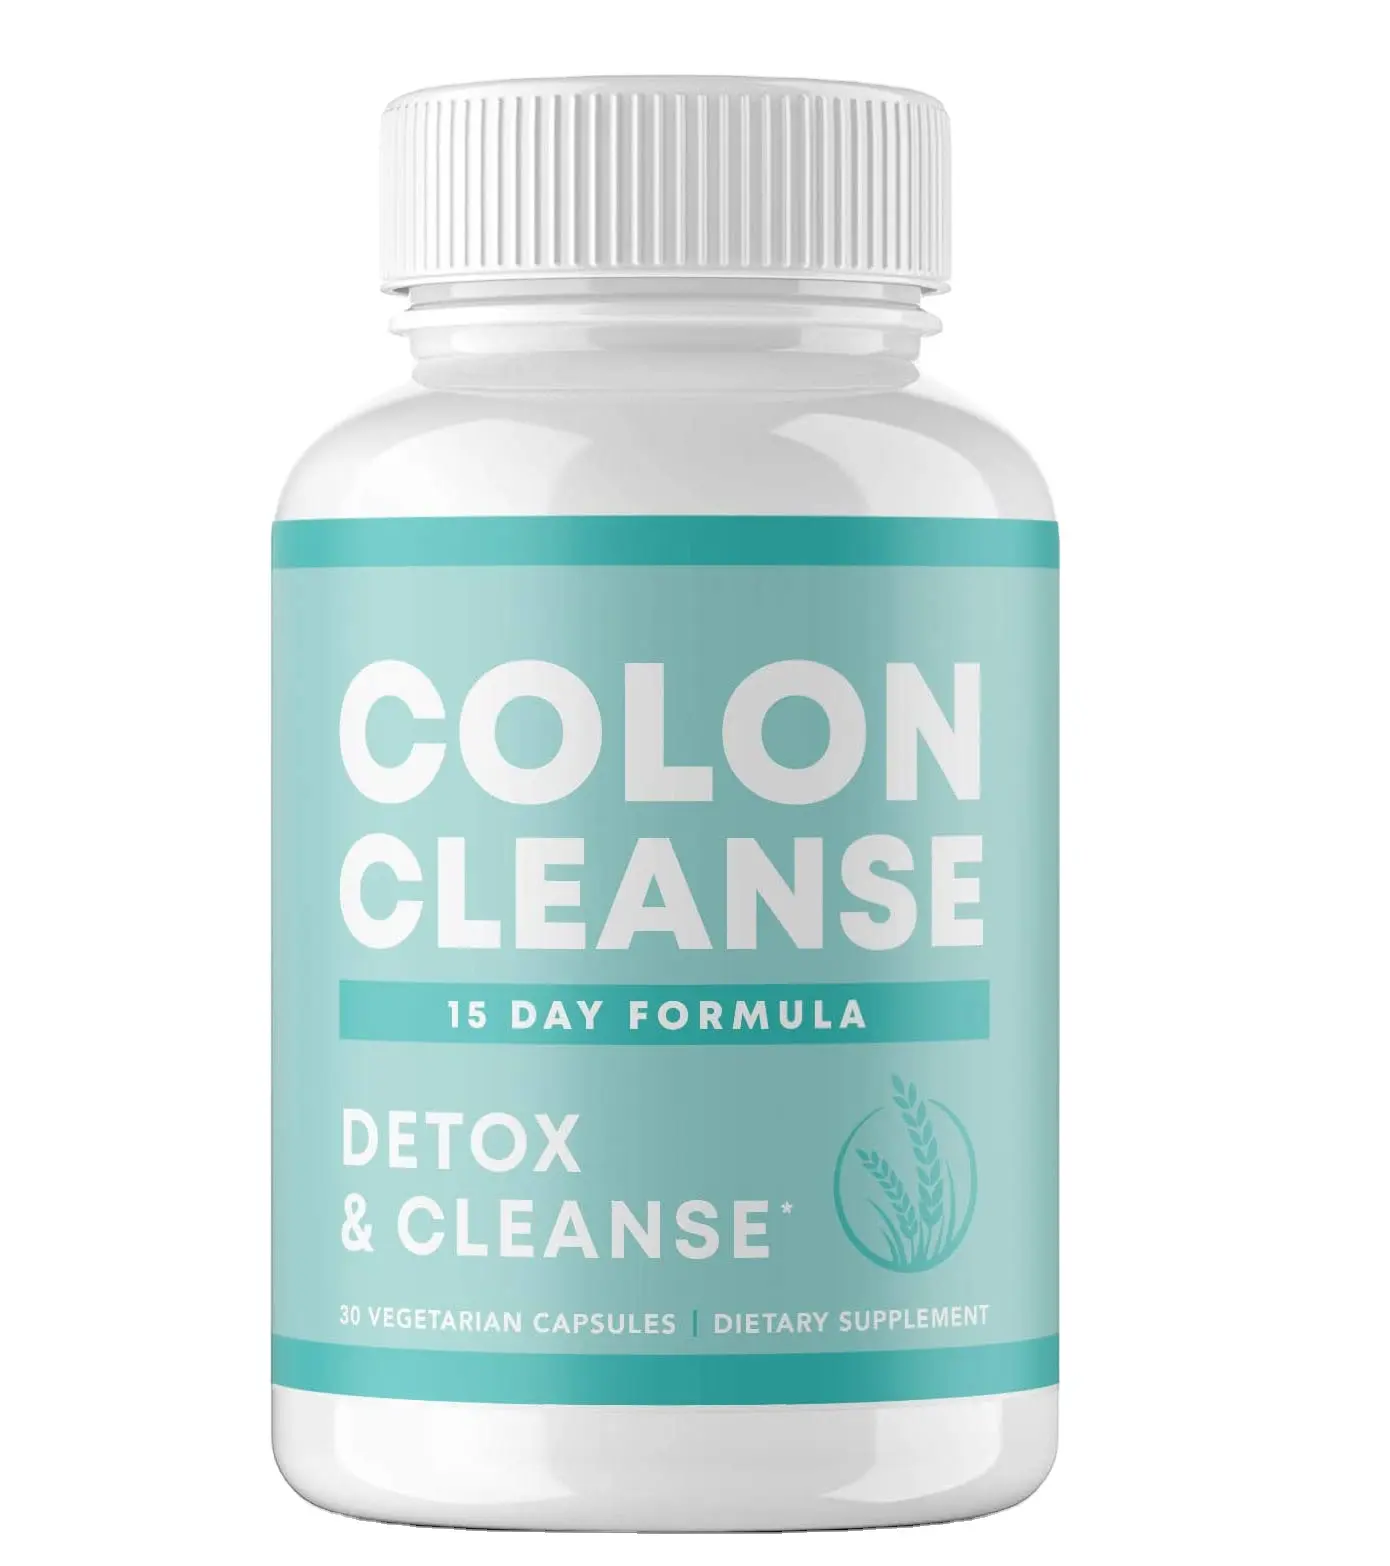 Bestseller bio-Detox-Reinigung aus Darm reinigung Top-Leistung natürliche Diät-Gesundheitssupplement 60 Kapseln/Pillen